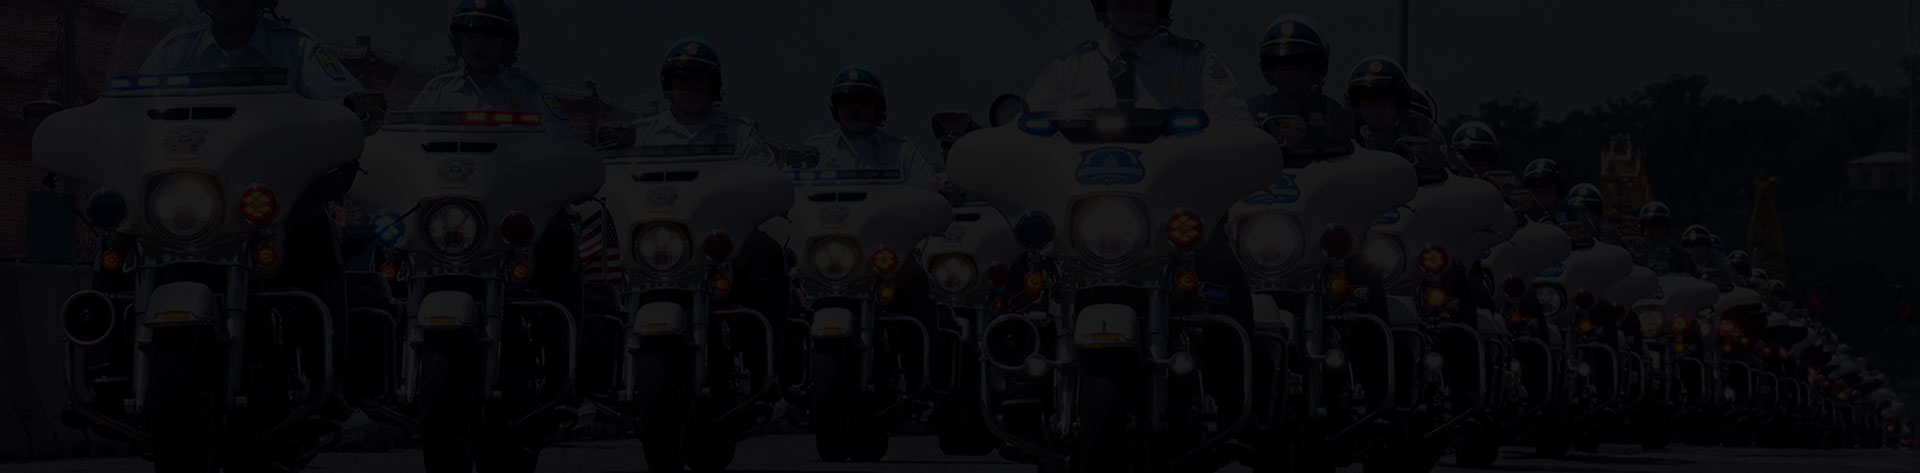 Police Motorcycle Helmet